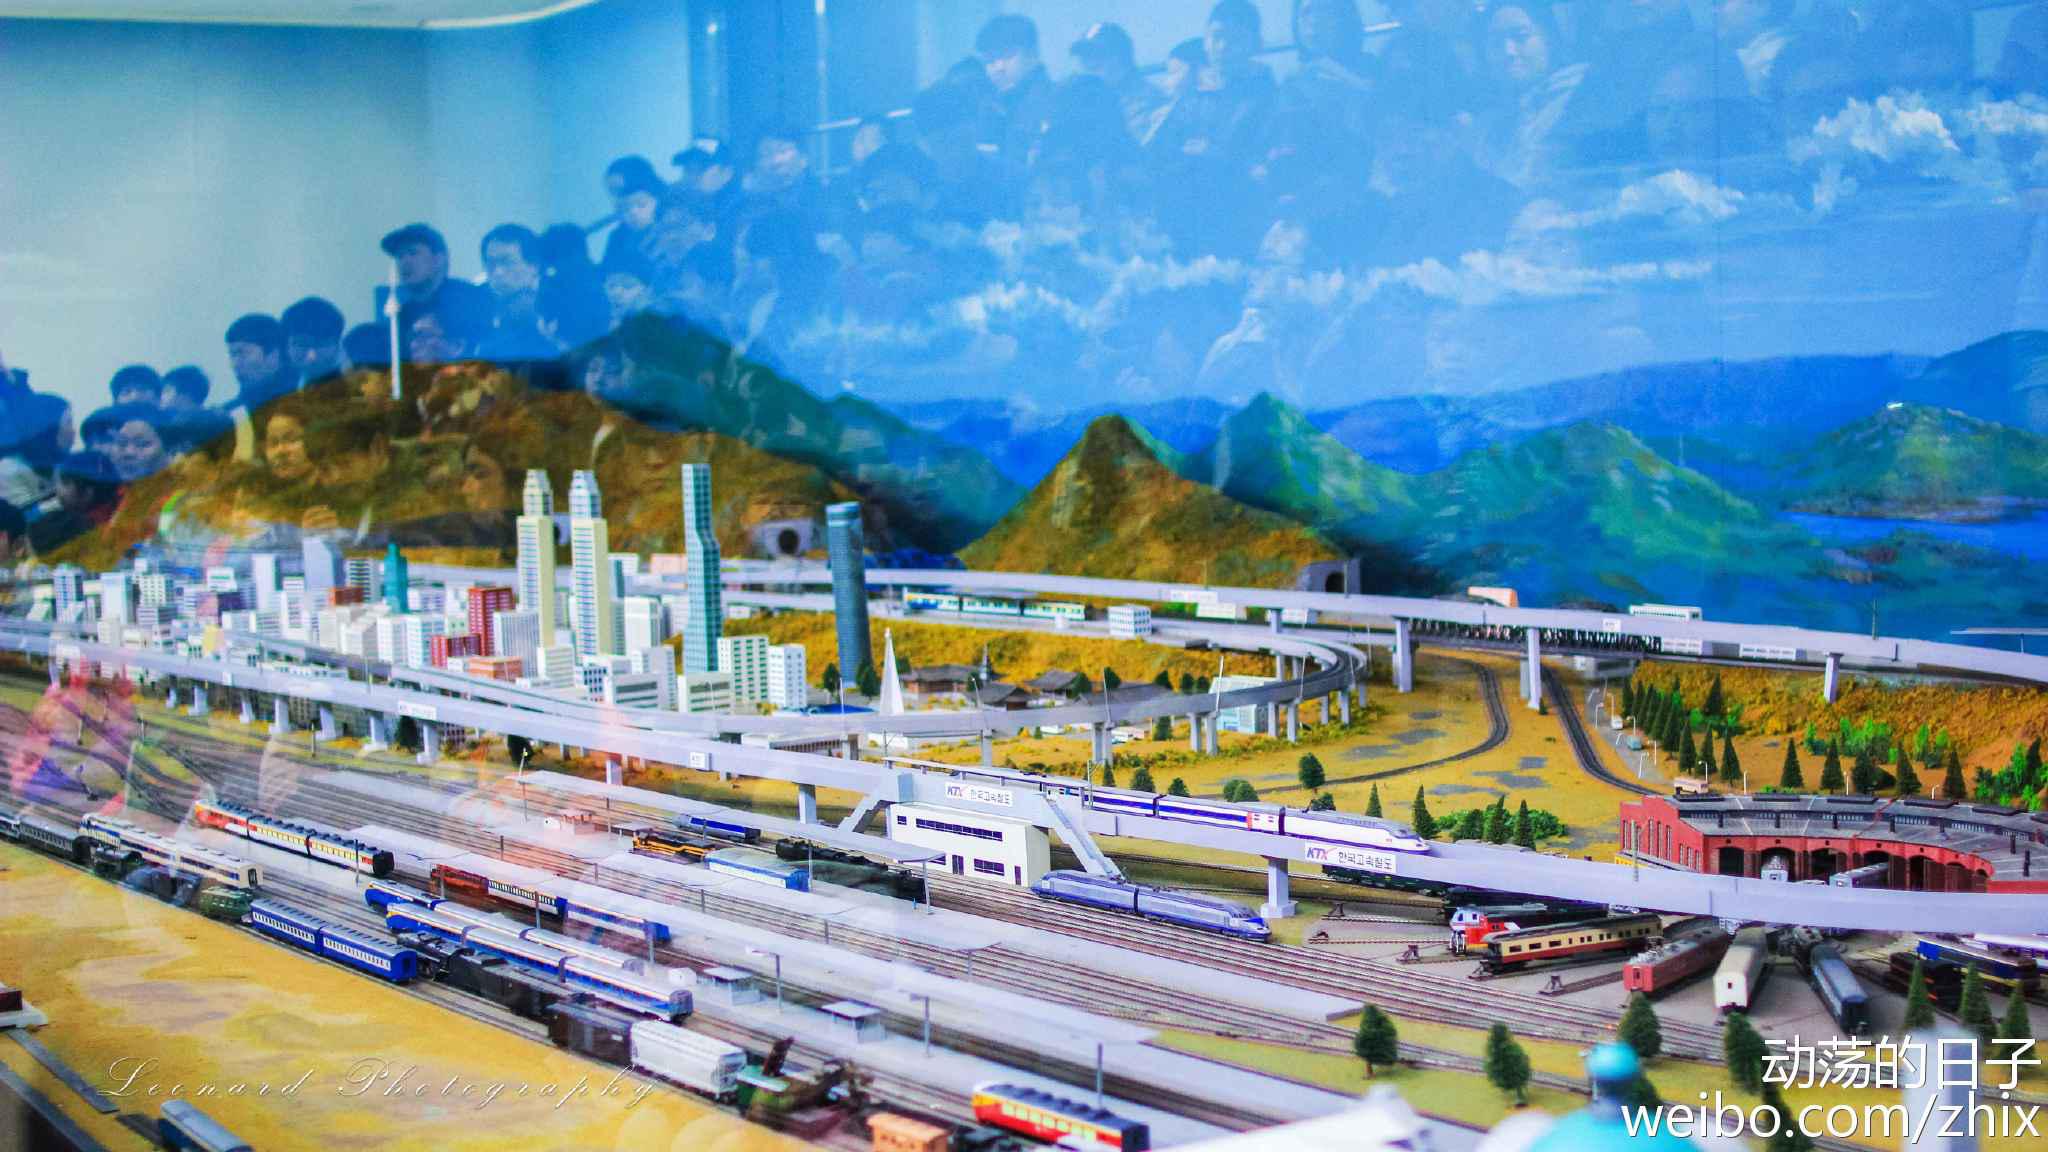 【携程攻略】北京中国铁道博物馆东郊馆景点,很好的博物馆，让孩子亲眼看一看铁路的发展史。室外已经弃用的火车轨…